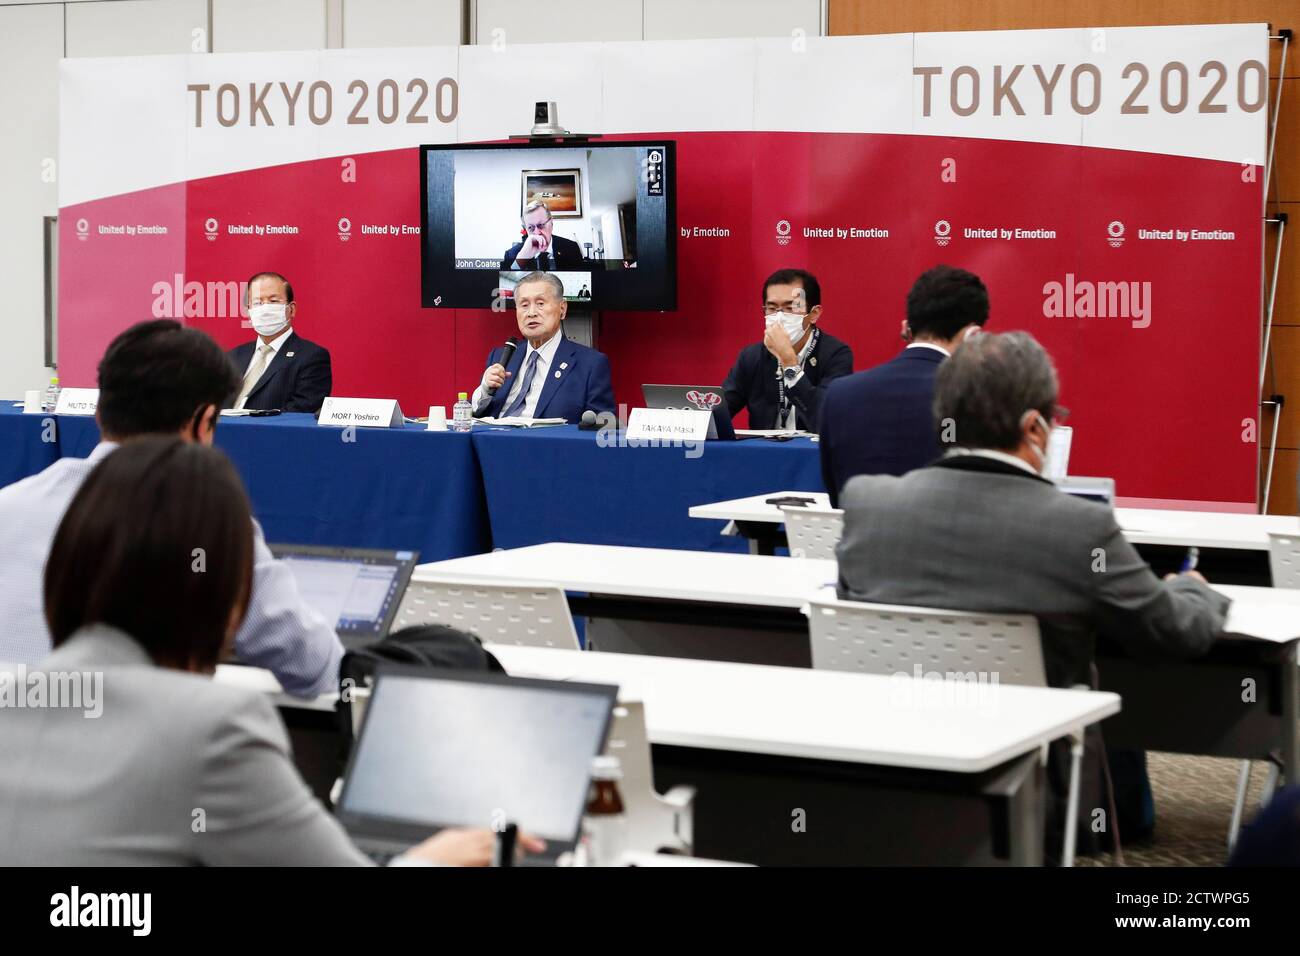 (200925) -- TOKIO, 25. September 2020 (Xinhua) -- Yoshiro Mori (C), Präsident des Organisationskomitees der Olympischen und Paralympischen Spiele in Tokio (Tokio 2020), Spricht während einer gemeinsamen Pressekonferenz zwischen dem Internationalen Olympischen Komitee (IOC) und Tokio 2020 im Anschluss an die 10. IOC Koordinierungskommission für die Spiele der XXXII Olympiade - Tokio 2020 in Tokio, Japan, 25. September 2020. (Rodrigo Reyes Marin/POOL via Xinhua) Stockfoto